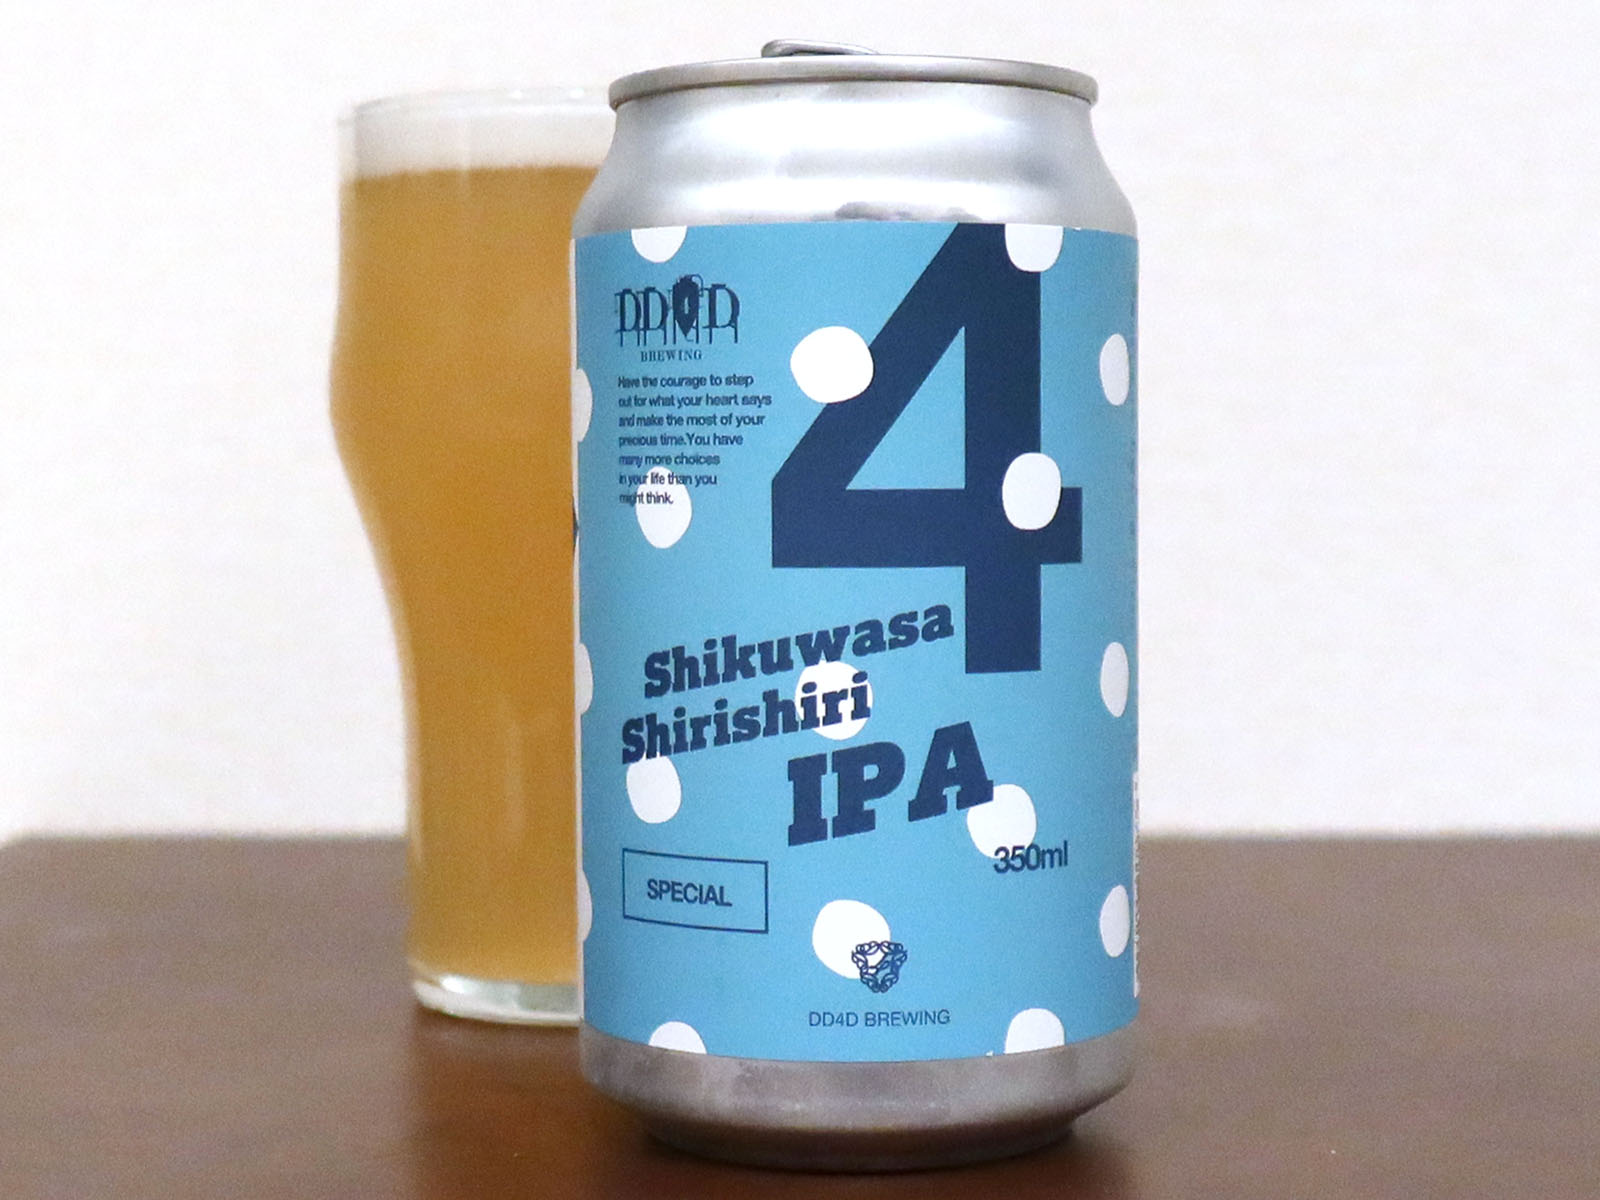 DD4D Brewing Shikuwasa ShiriShiri IPA